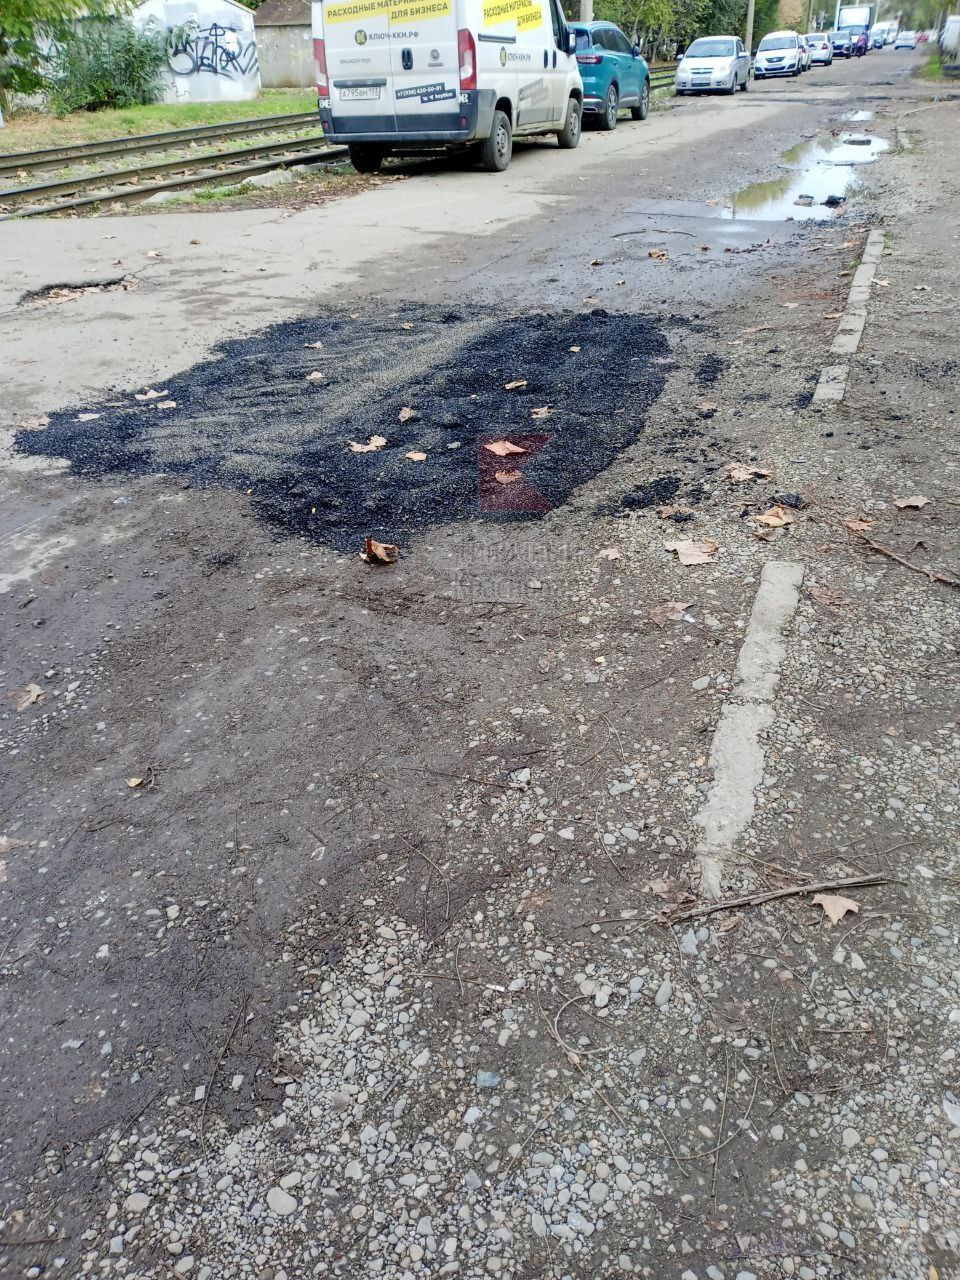 То кочка, то канава: жители показали, как ремонтируют дороги в Краснодаре